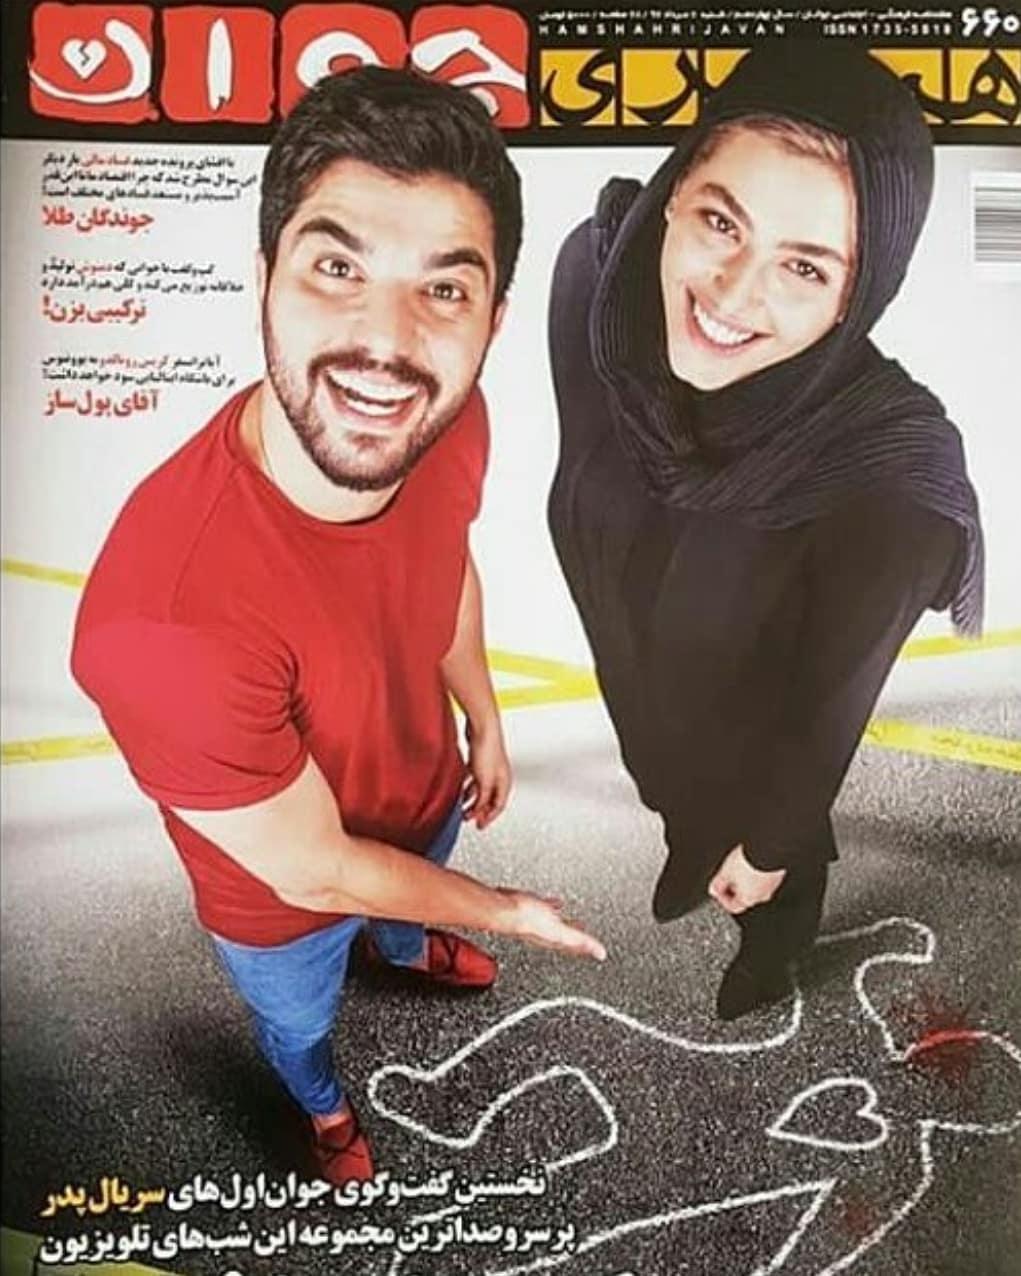 ریحانه پارسا در پوستر سریال تلویزیونی پدر به همراه سینا مهراد